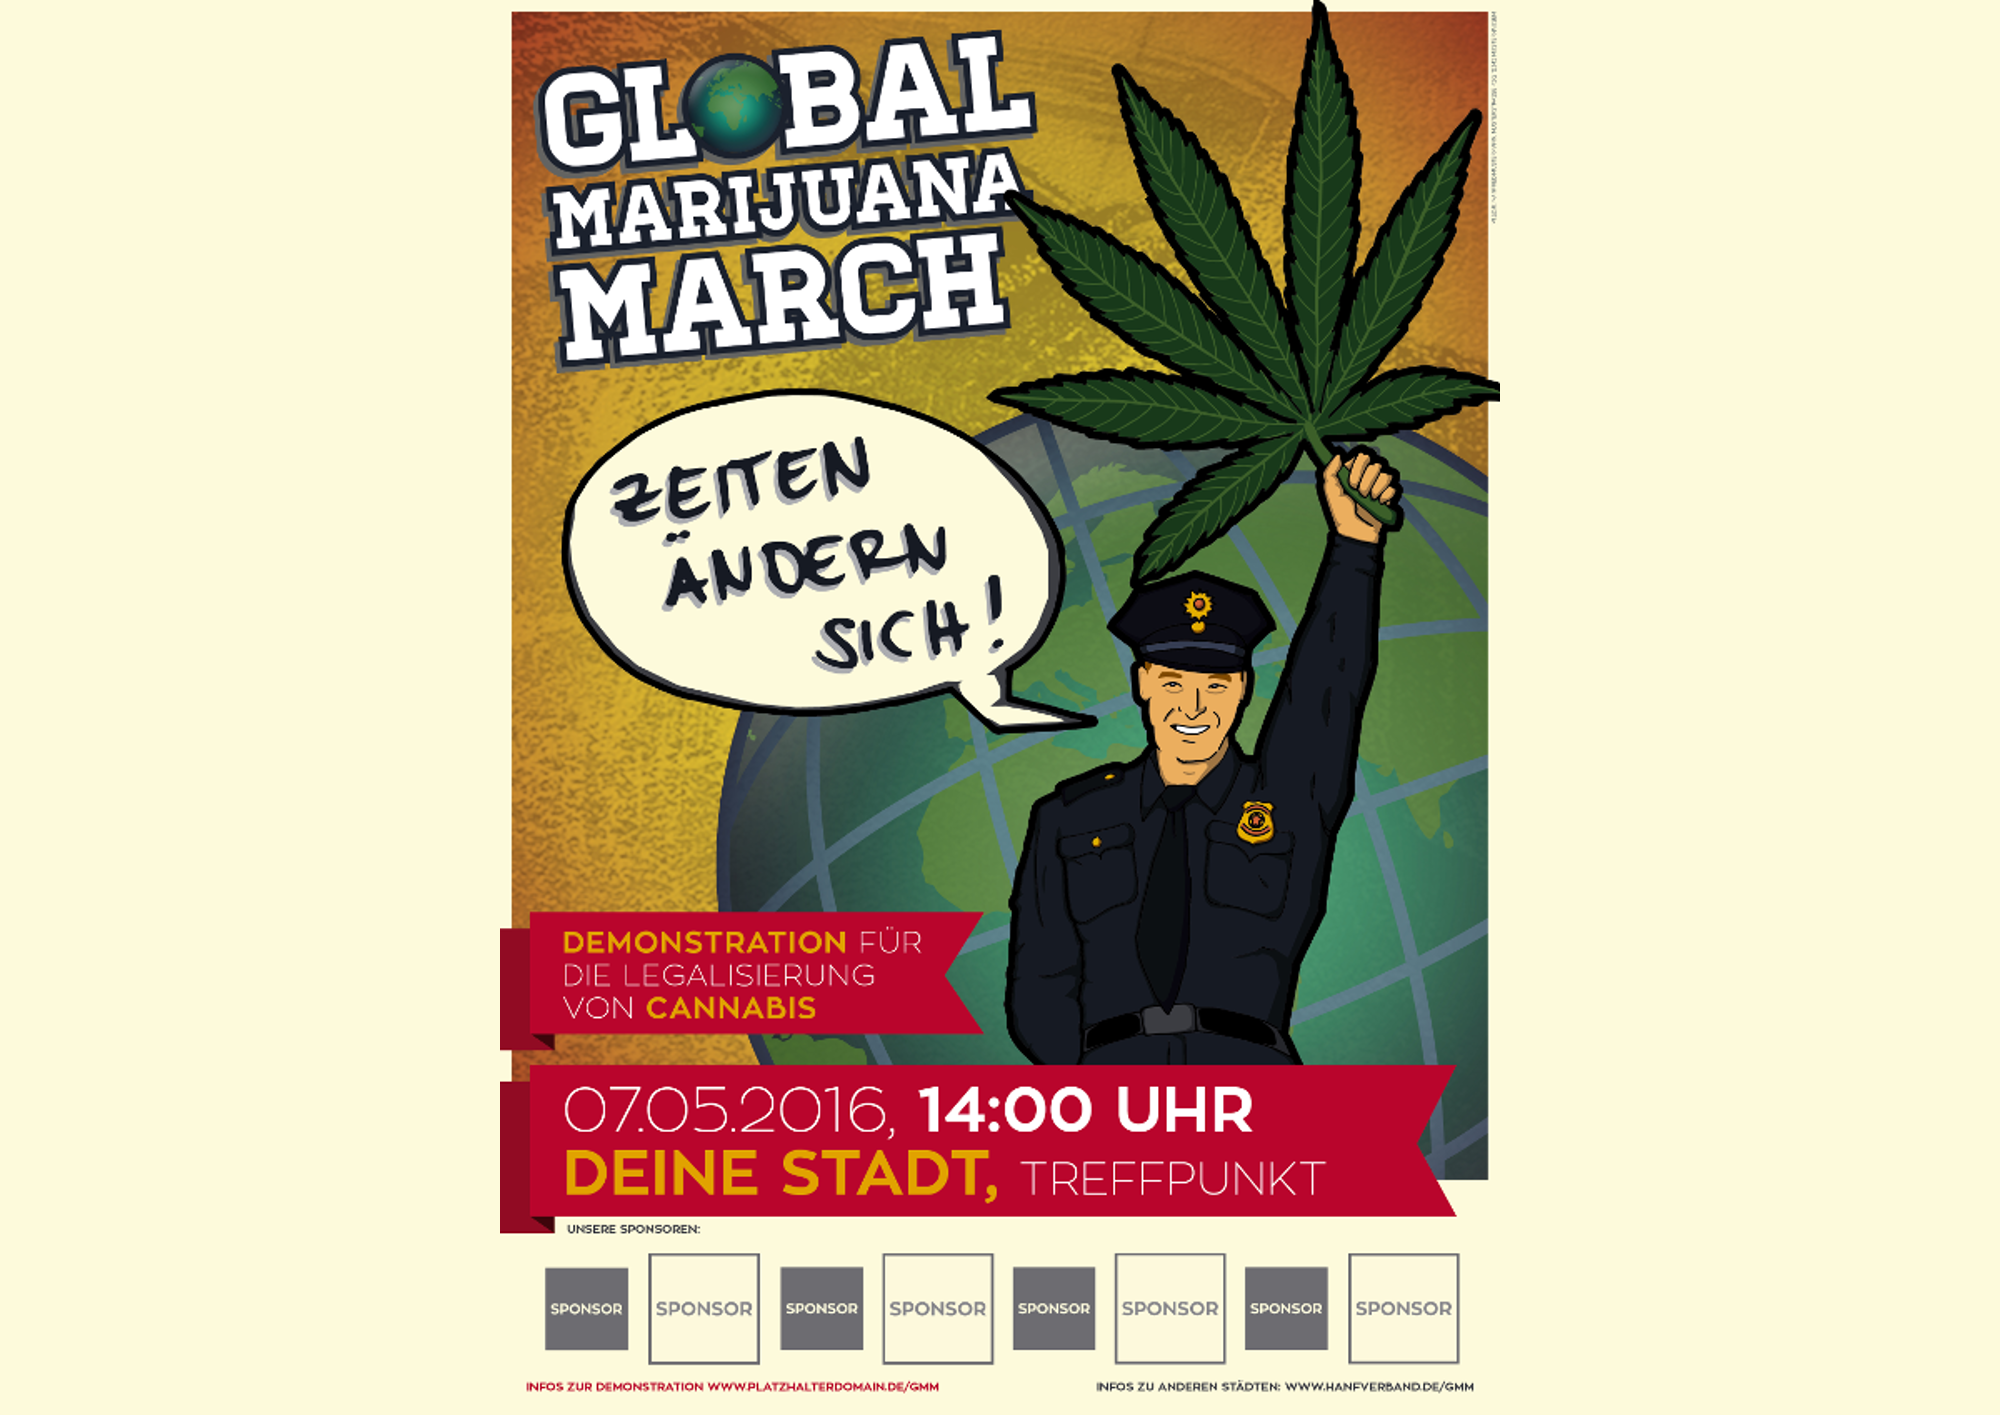 Global Marijuana March – Demonstrationen zur Legalisierung von Cannabis in 31 deutschen Städten